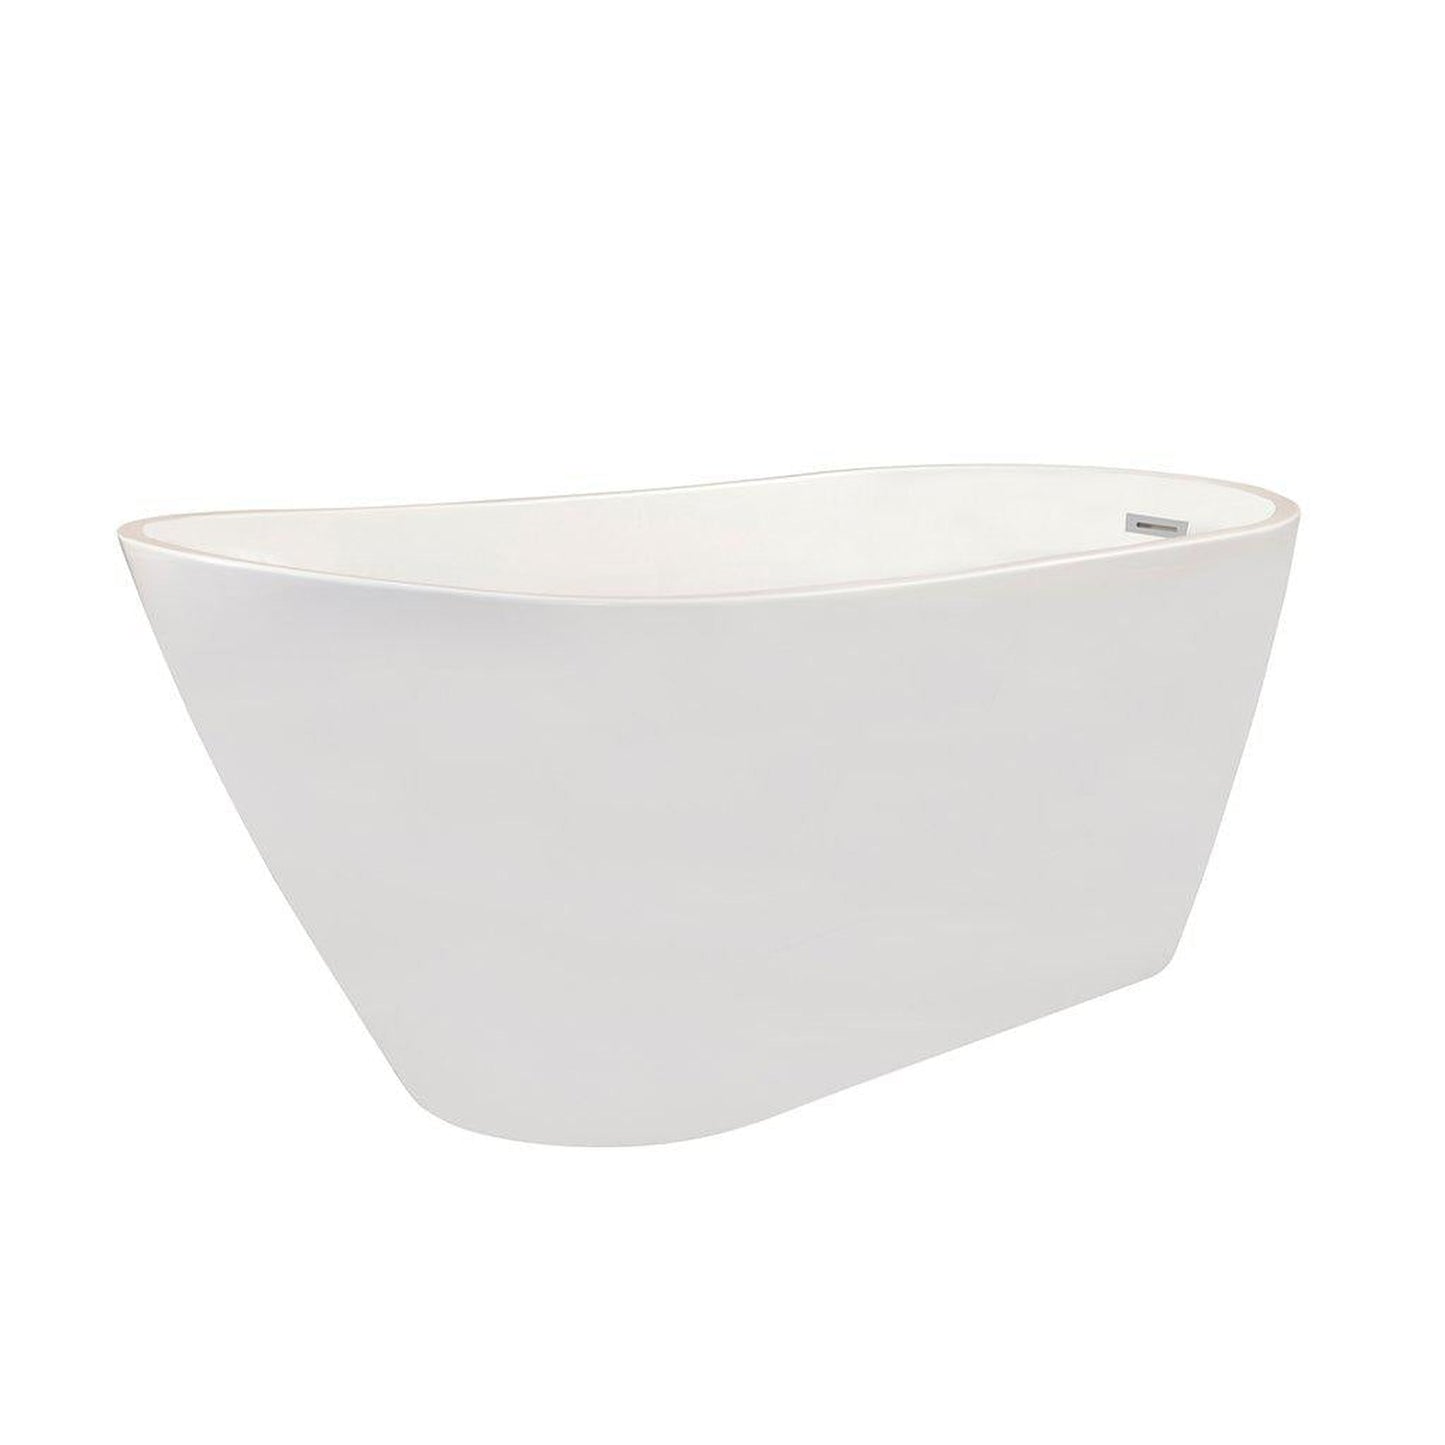 Altair Shaia 67" x 32" White Acrylic Freestanding Bathtub